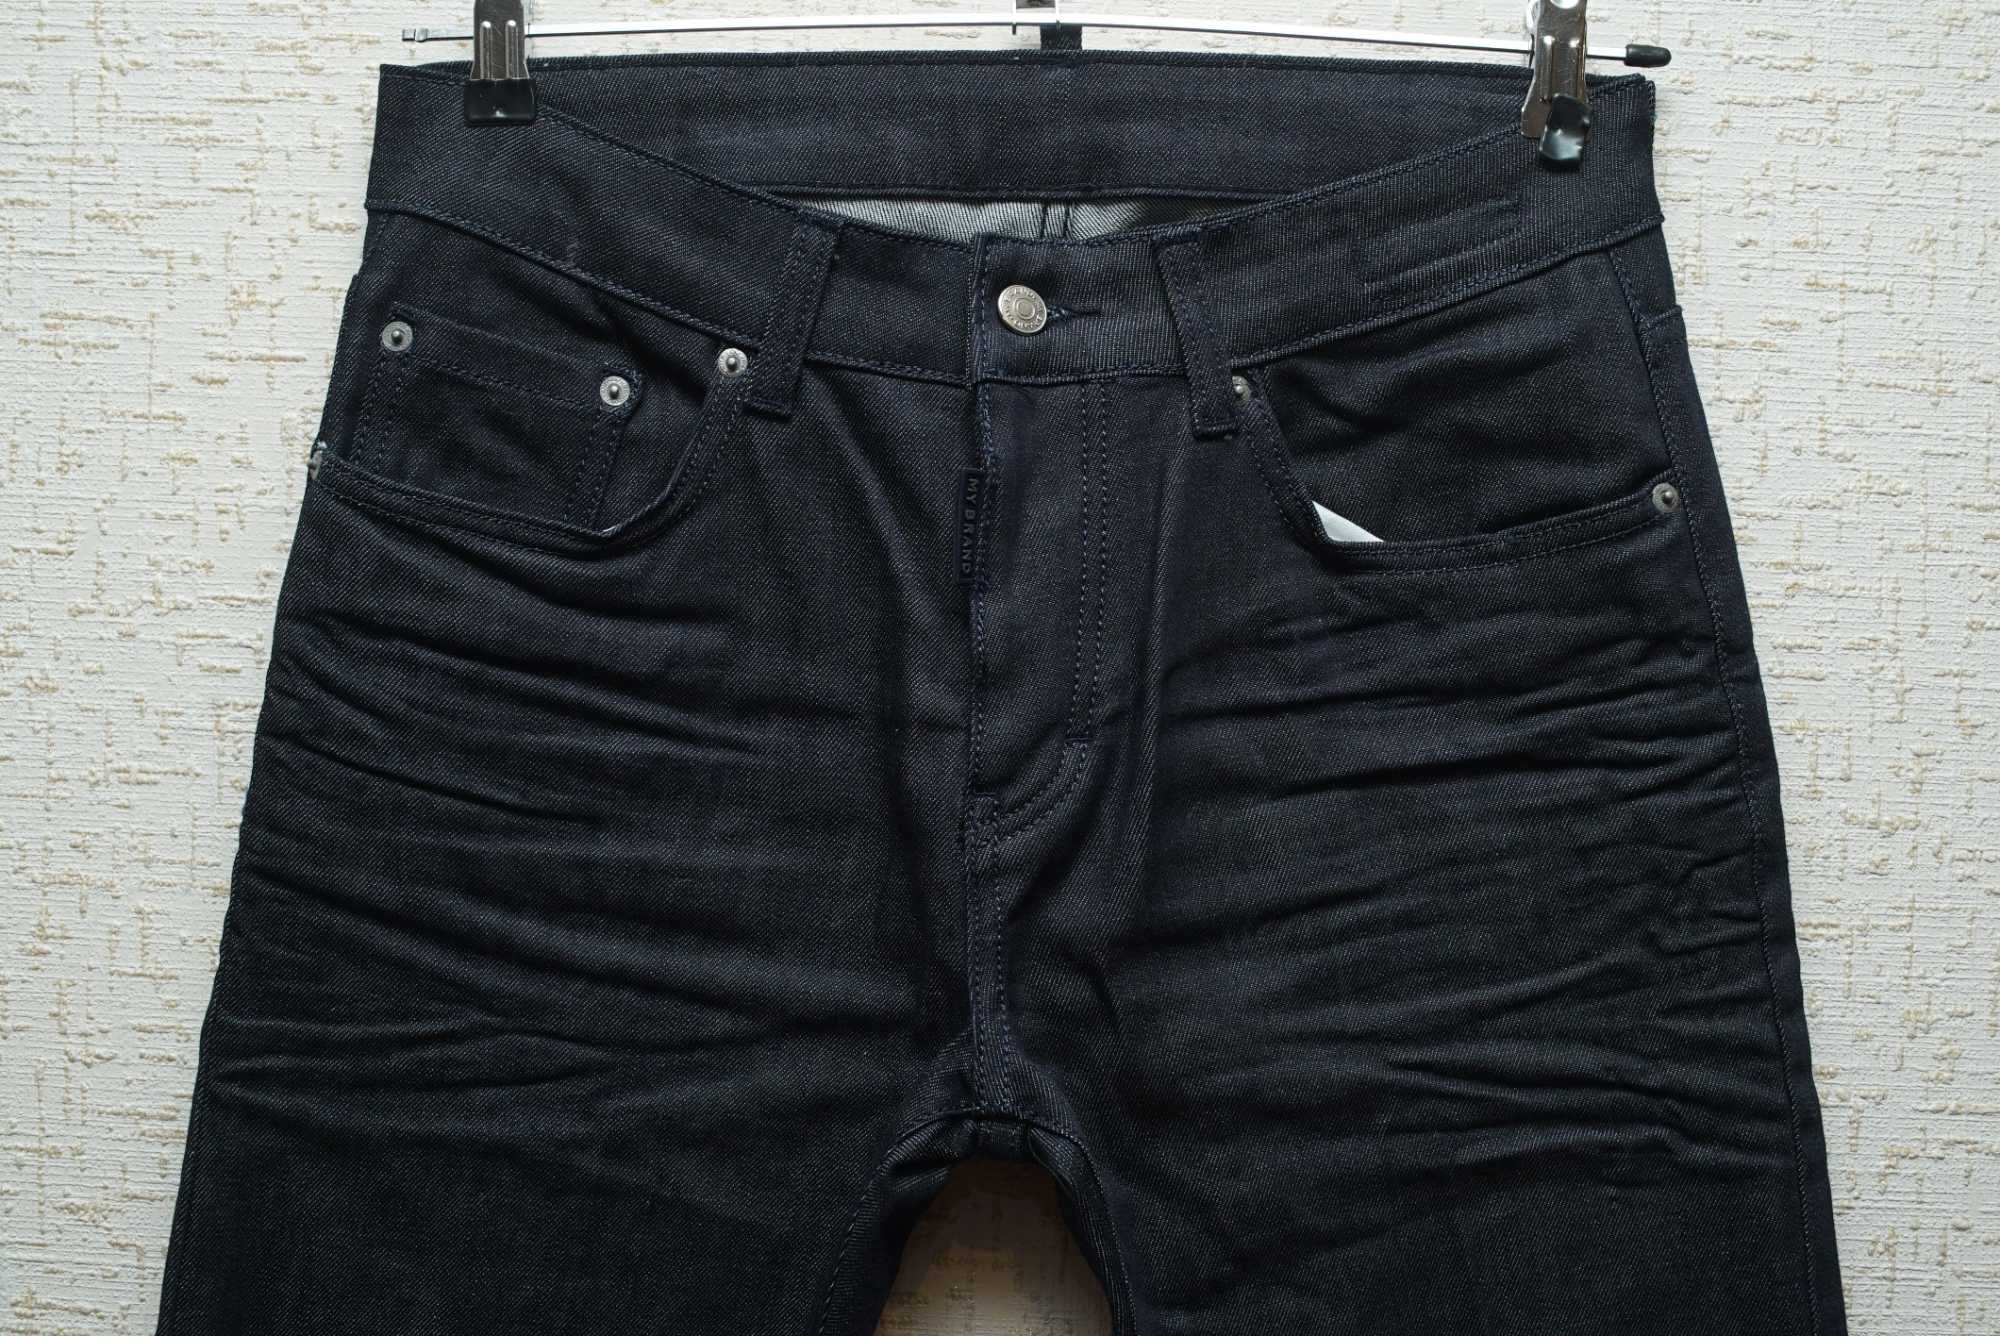 Мужские джинсы MY BRAND темно-синего цвета, skinny